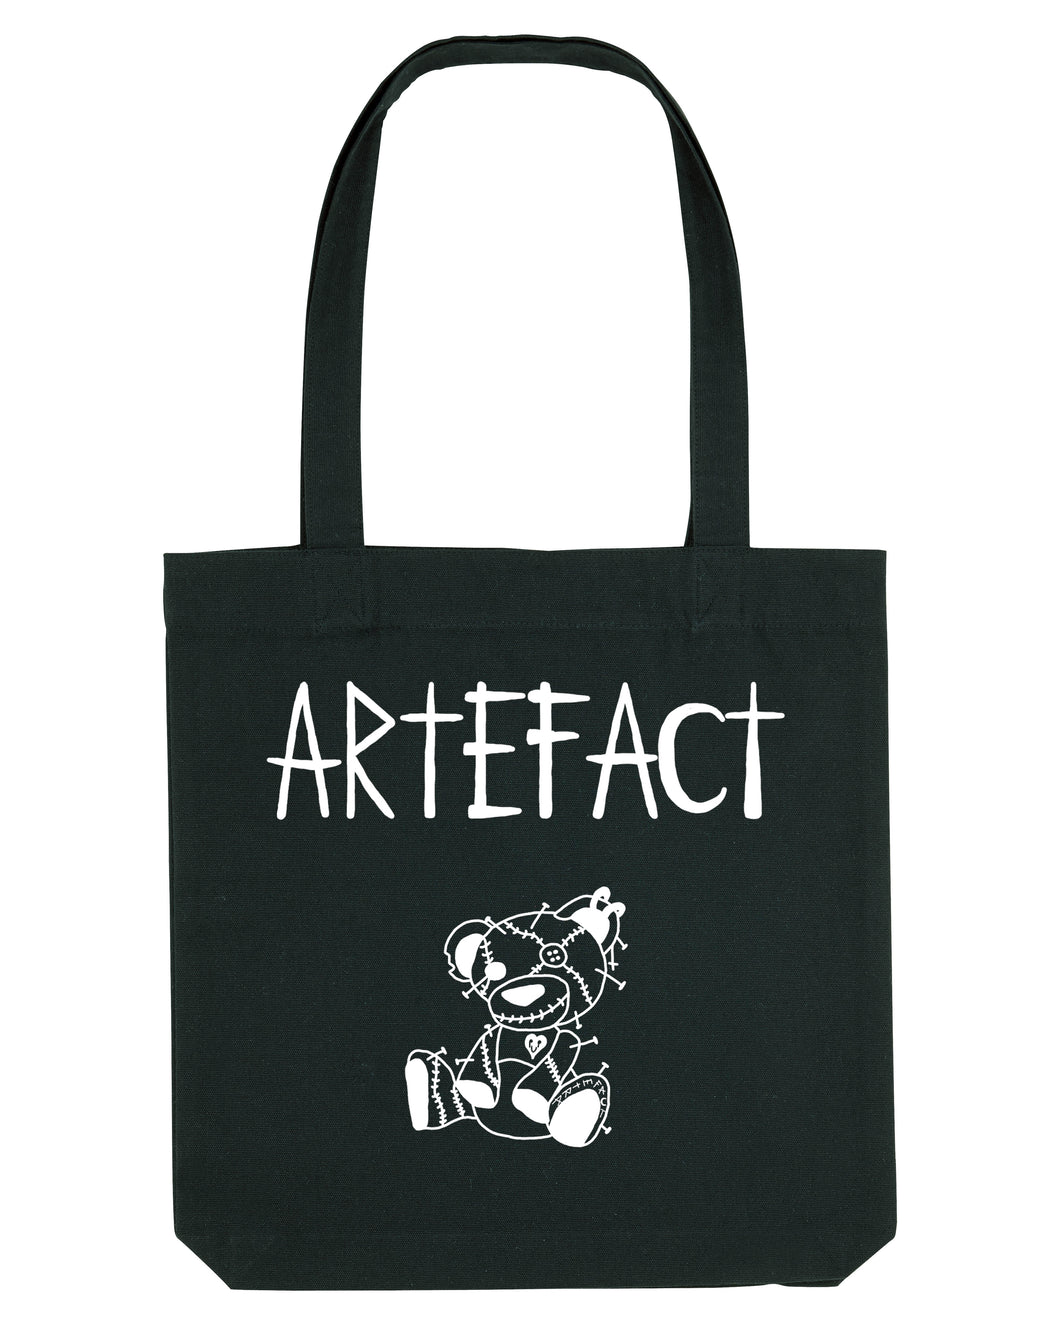 Tote bag artefact co réalisé et designé en France de manière artisanale, imprimé en sérigraphie. Scoot culture 